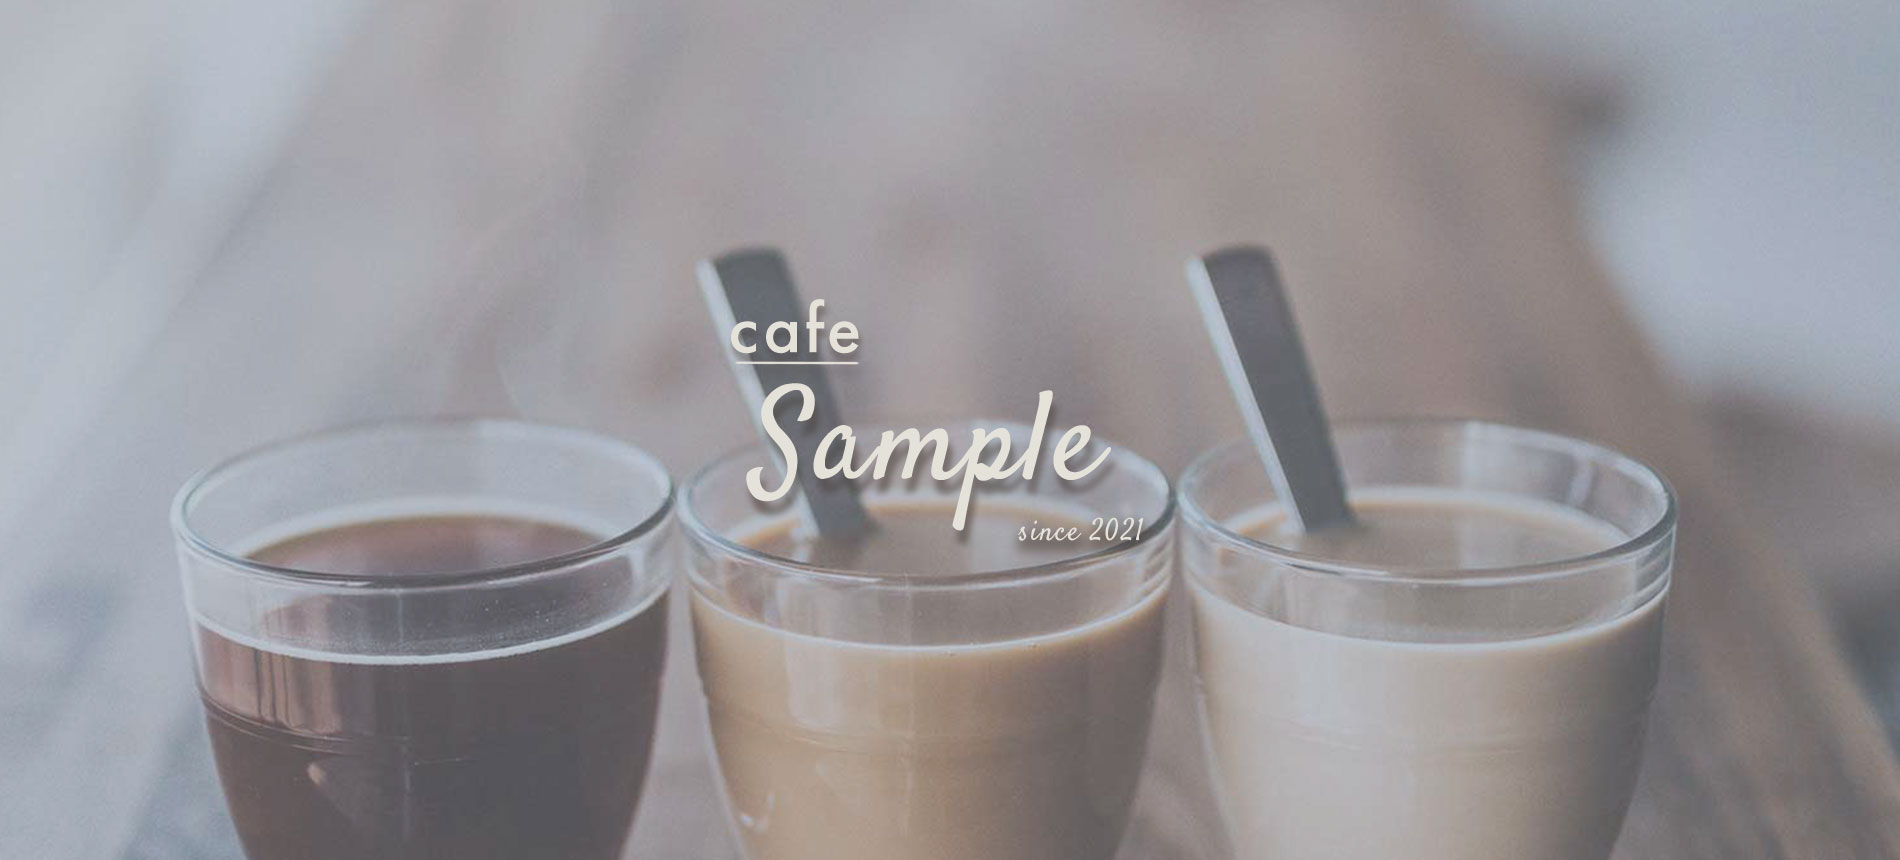 cafe sample